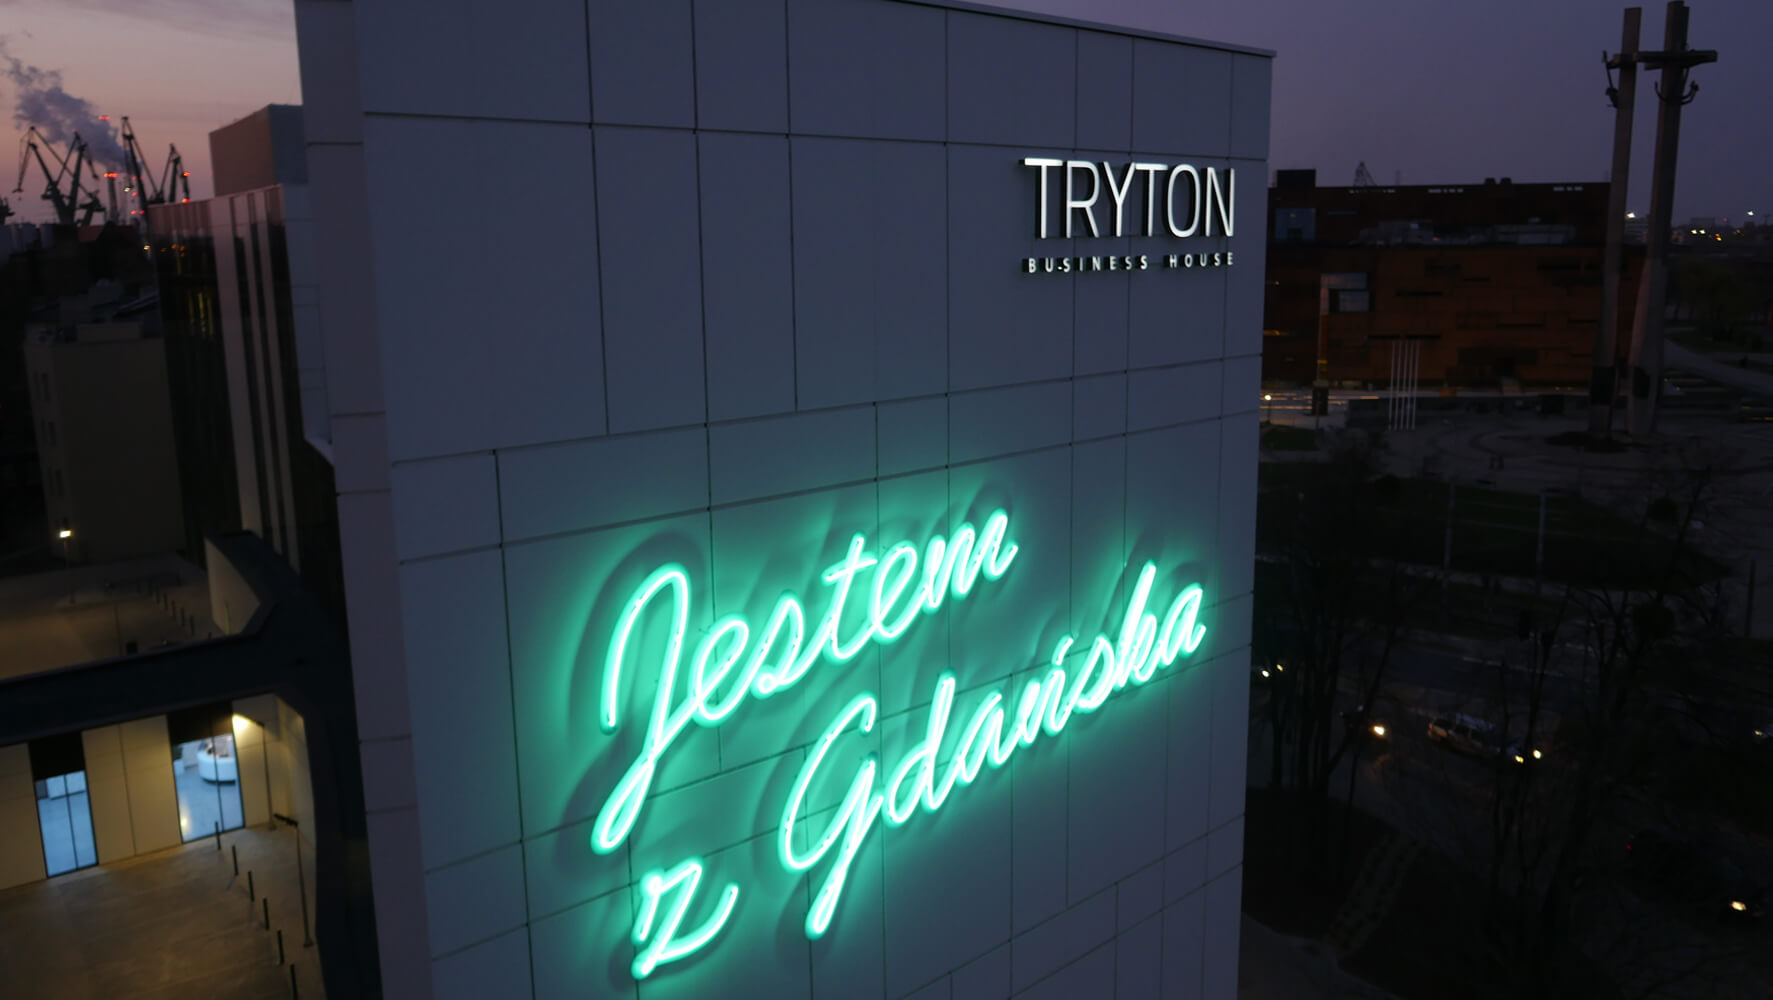 Triton - Tryton - iscrizione "Io sono di Danzica" creata da insegne al neon, posta sulla facciata